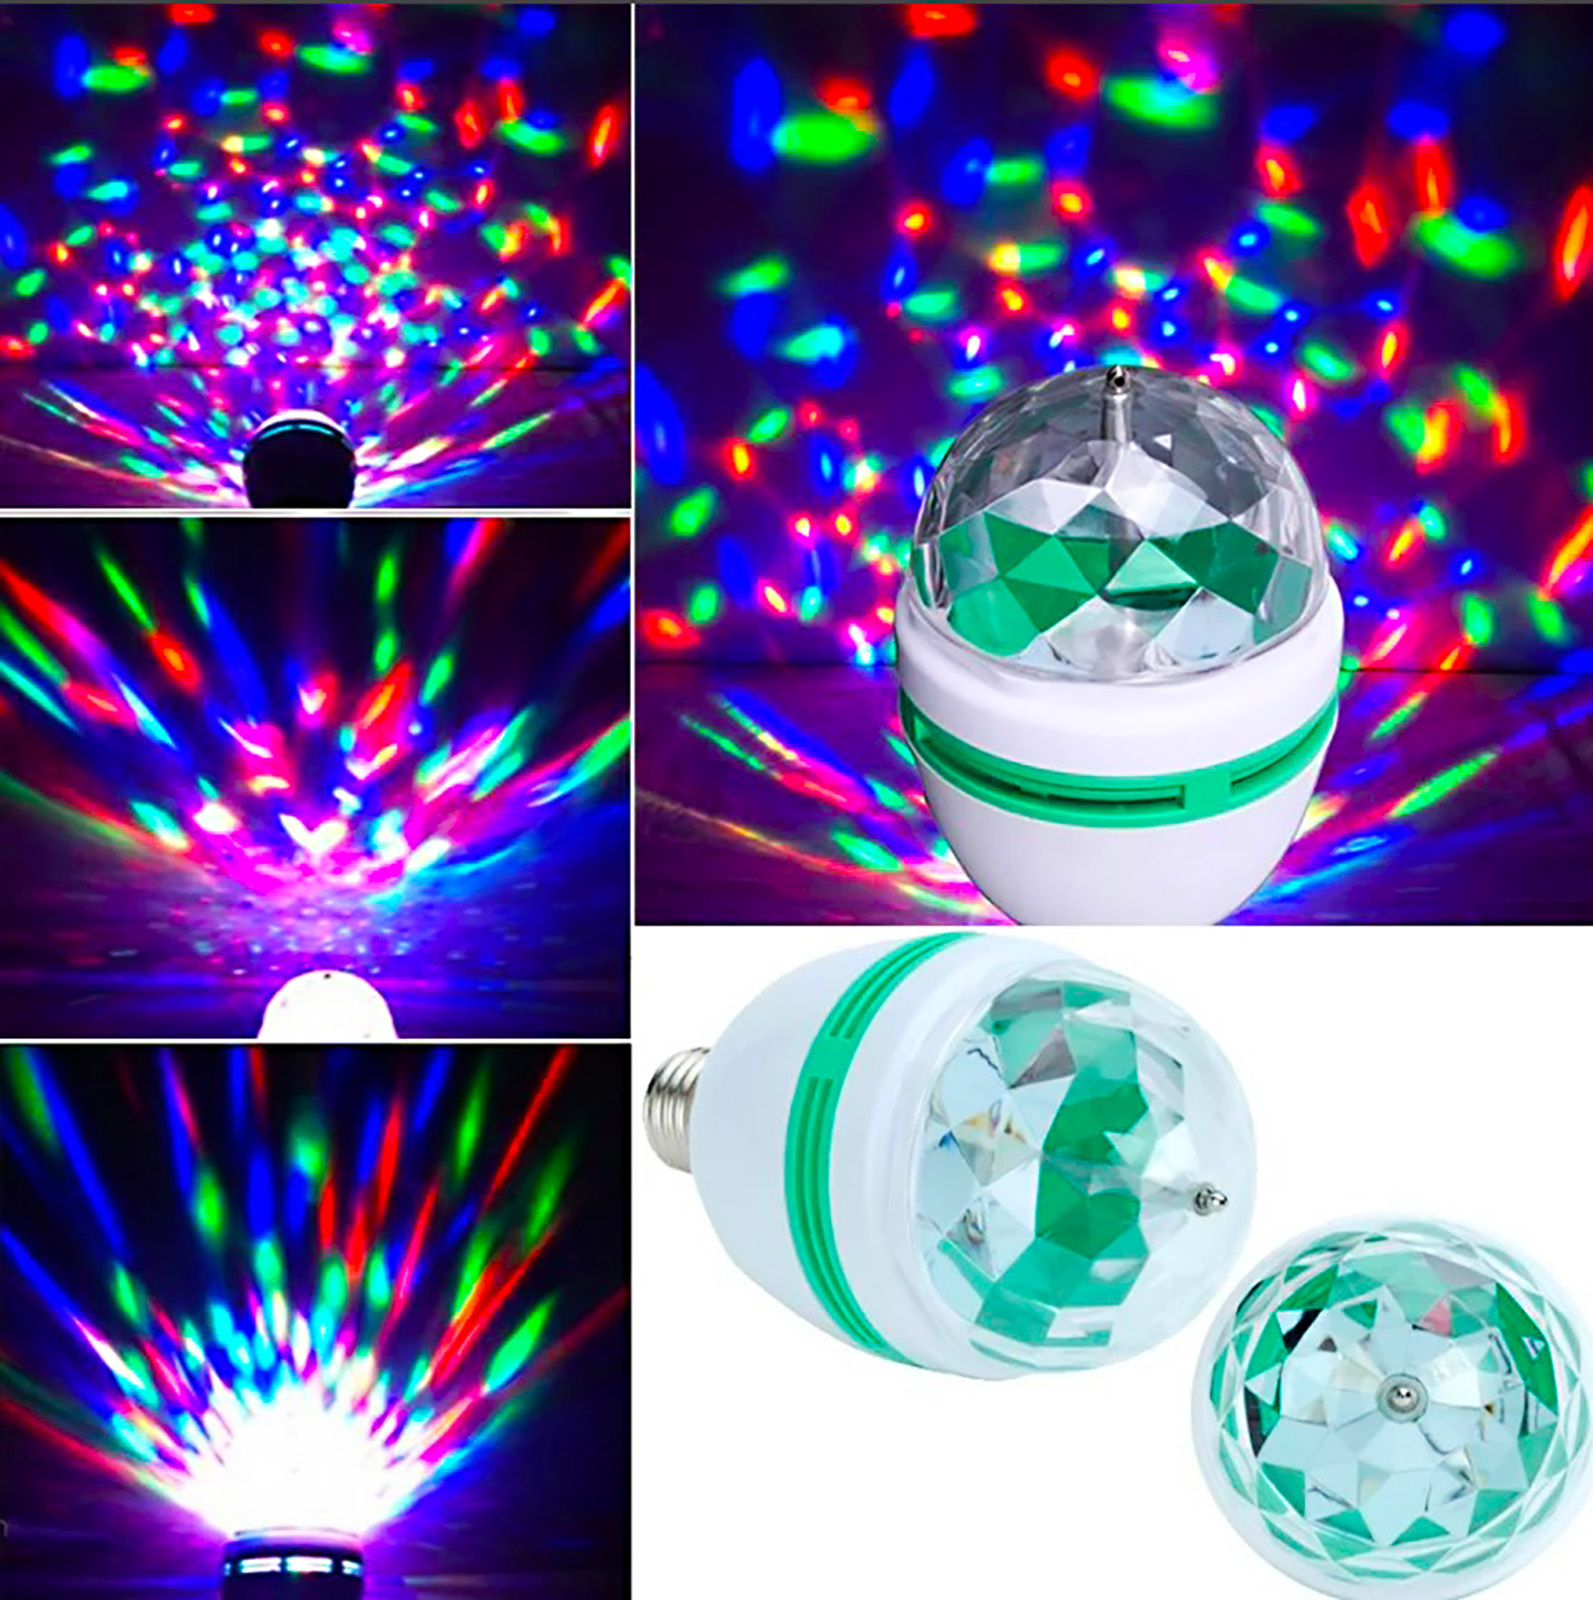 Диско лампа led Full Color Rotating Lamp. Вращающаяся led диско-лампа "Full Color Rotating Lamp. Диско-лампа домашняя светодиодная е27 (601-253). Диско-лампа led Mini Party Light.